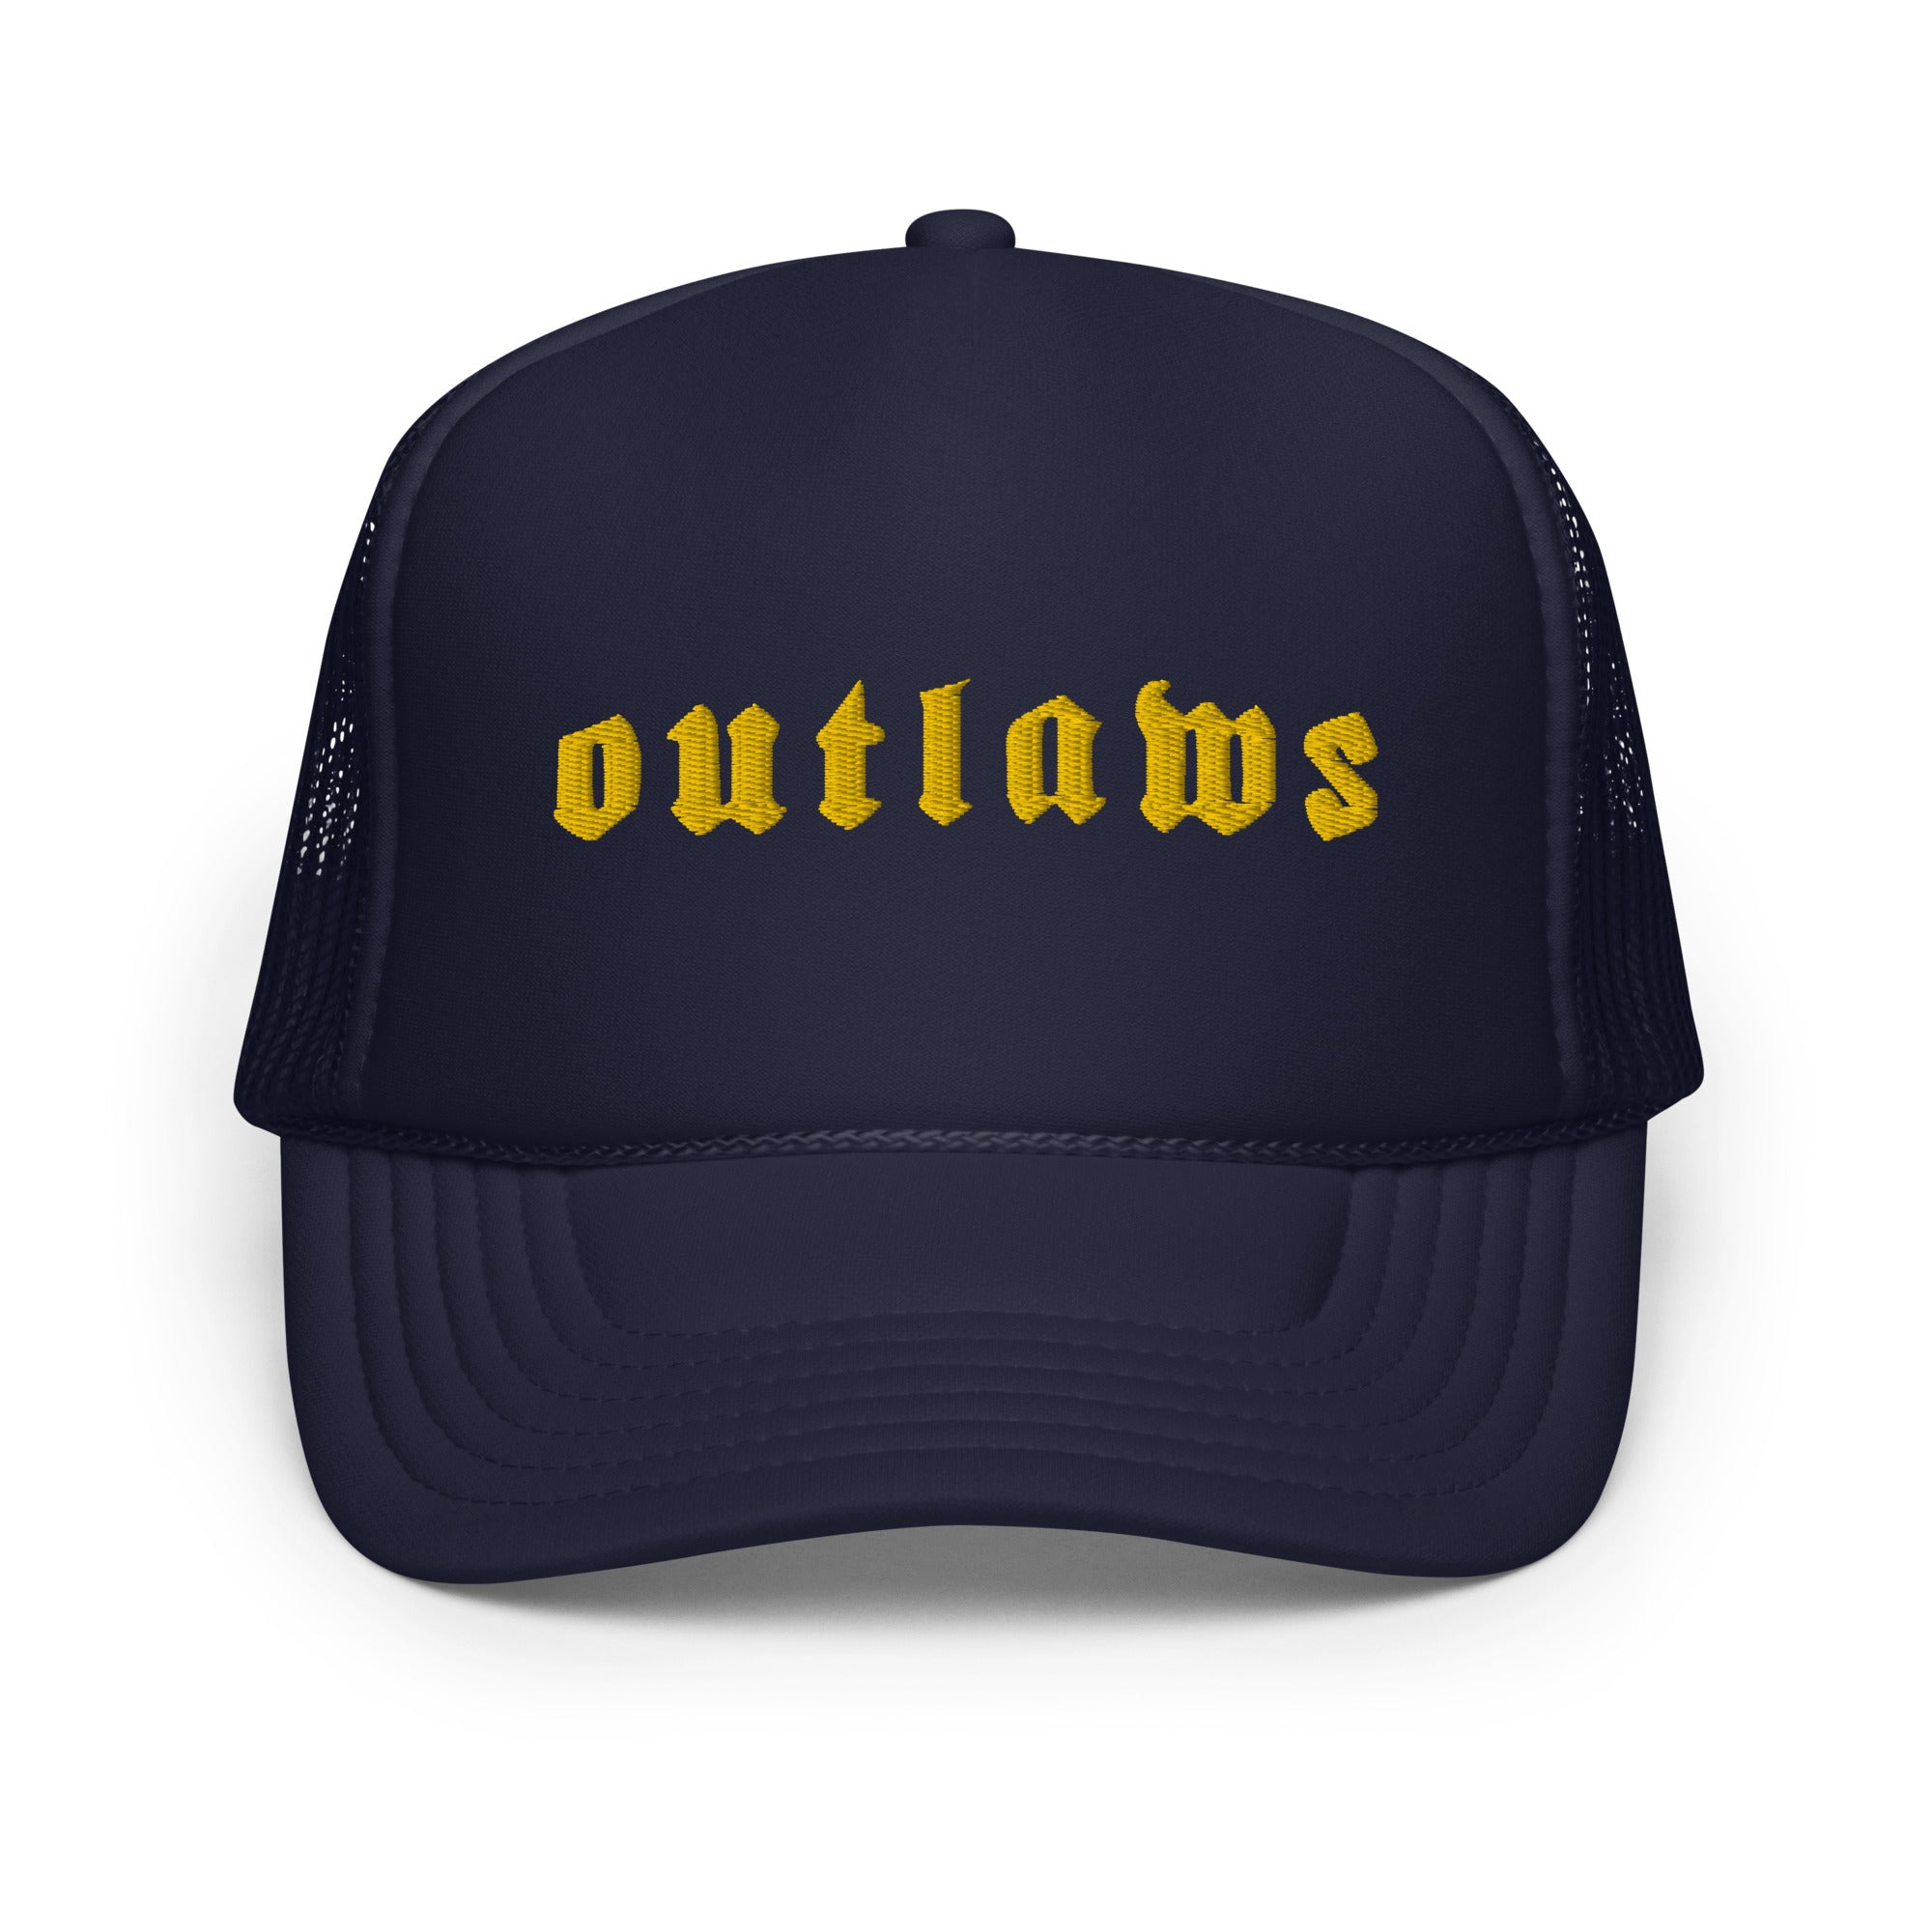 Outlaws Yellow Foam trucker hat